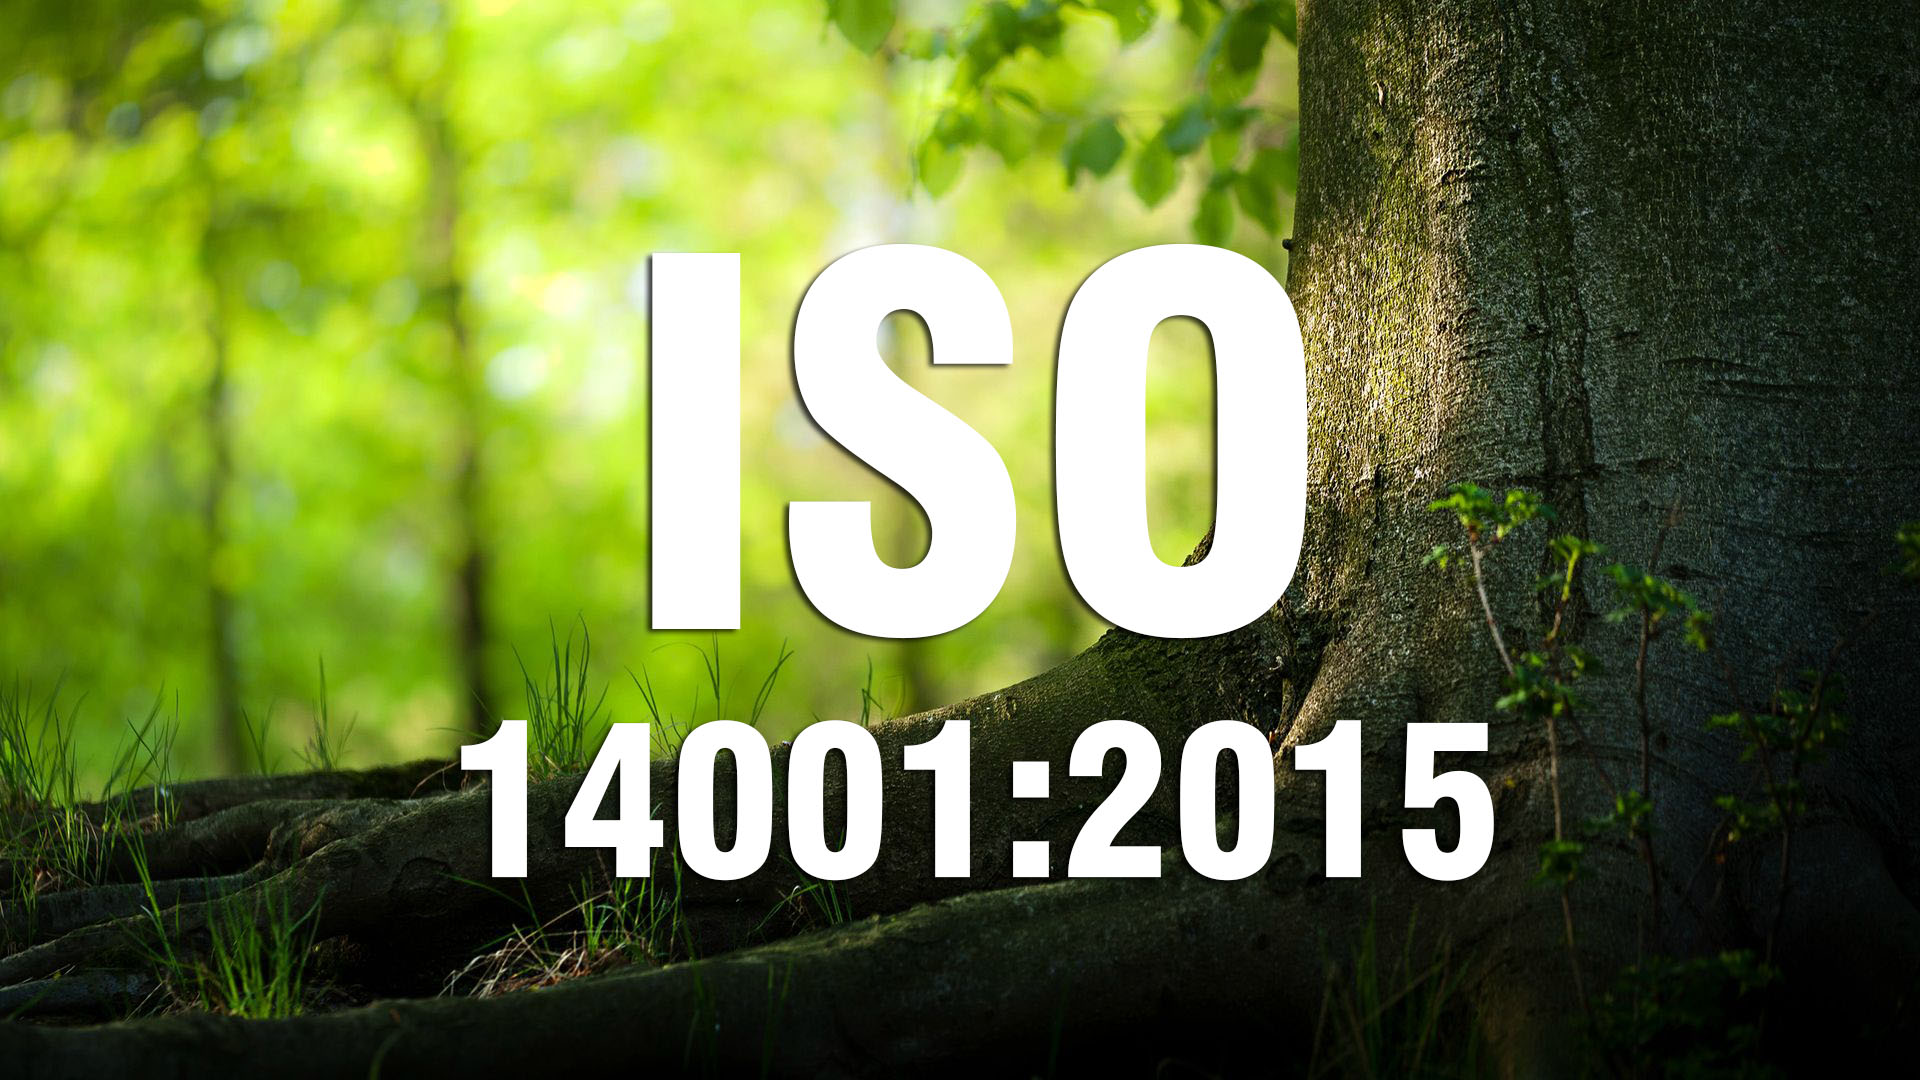 HOẠCH ĐỊNH THÔNG TIN VĂN BẢN THEO YÊU CẦU  ISO 14001:2015 (Cấp 2)